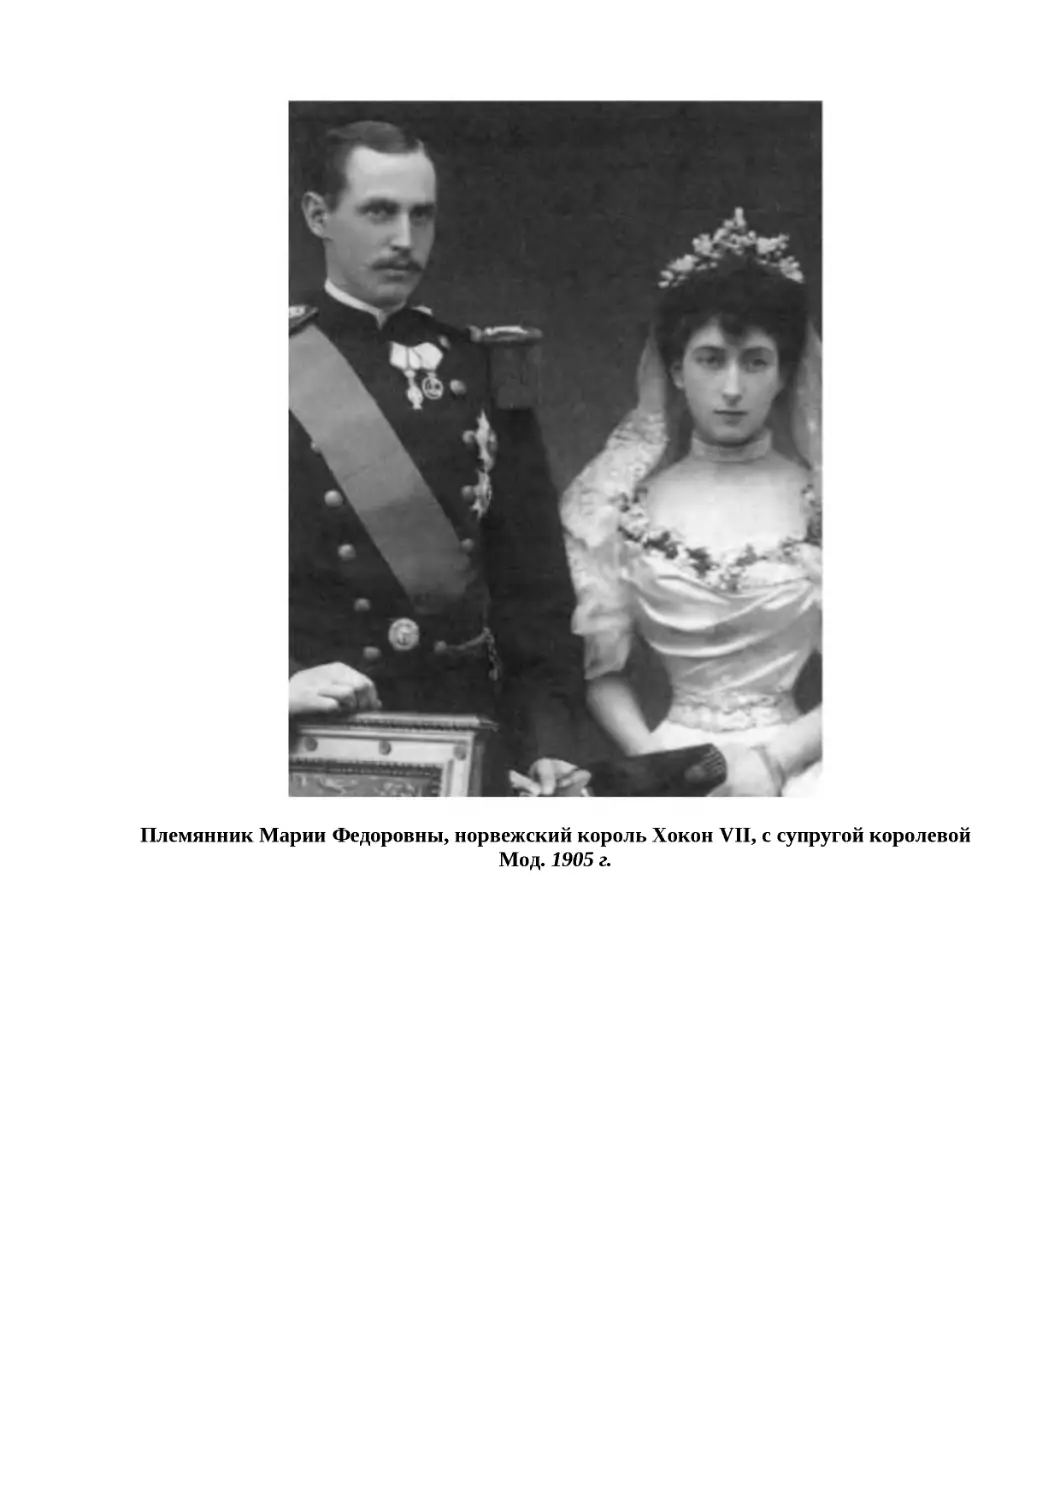 "
﻿Племянник Марии Федоровны, норвежский король Хокон VII, с супругой королевой Мод. 1905 г